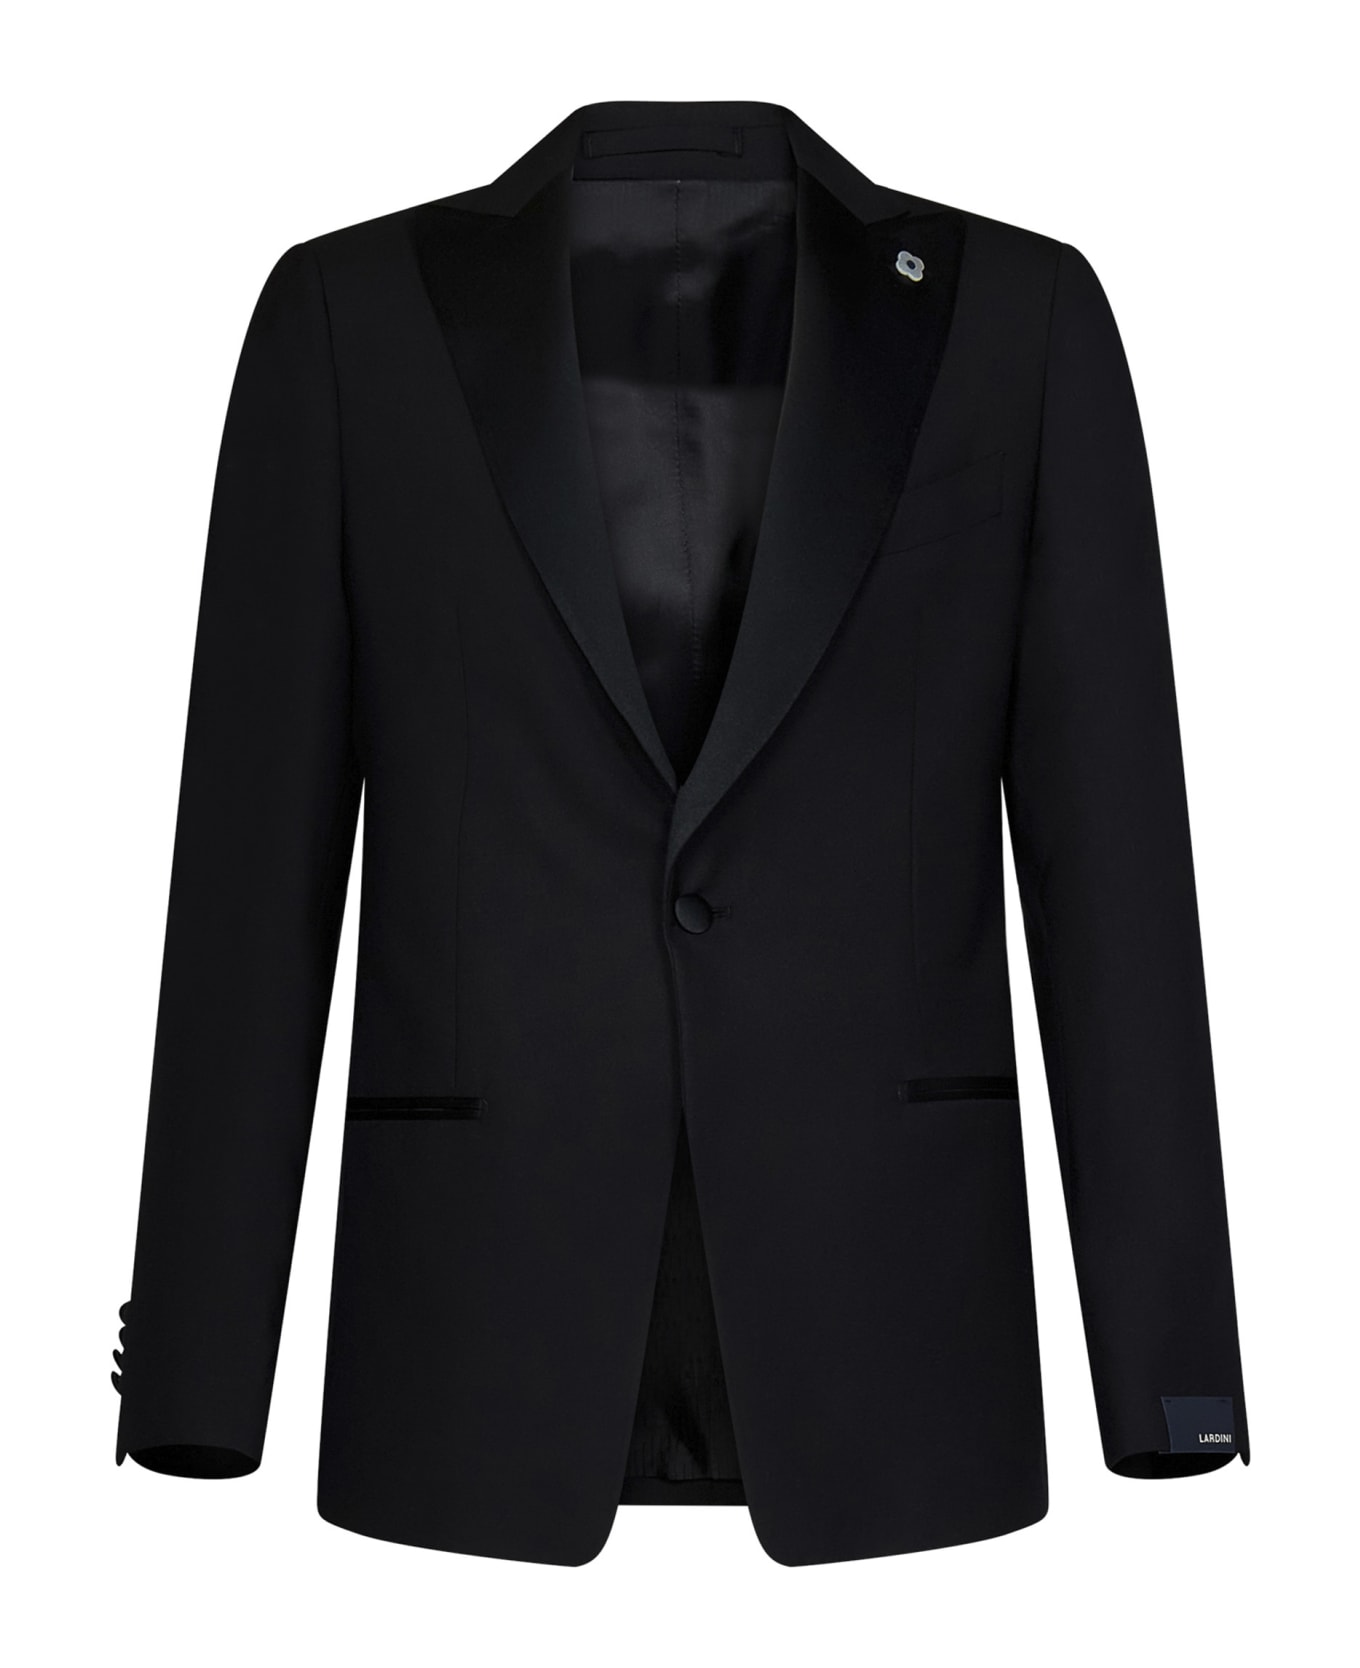 Lardini Suit - Black